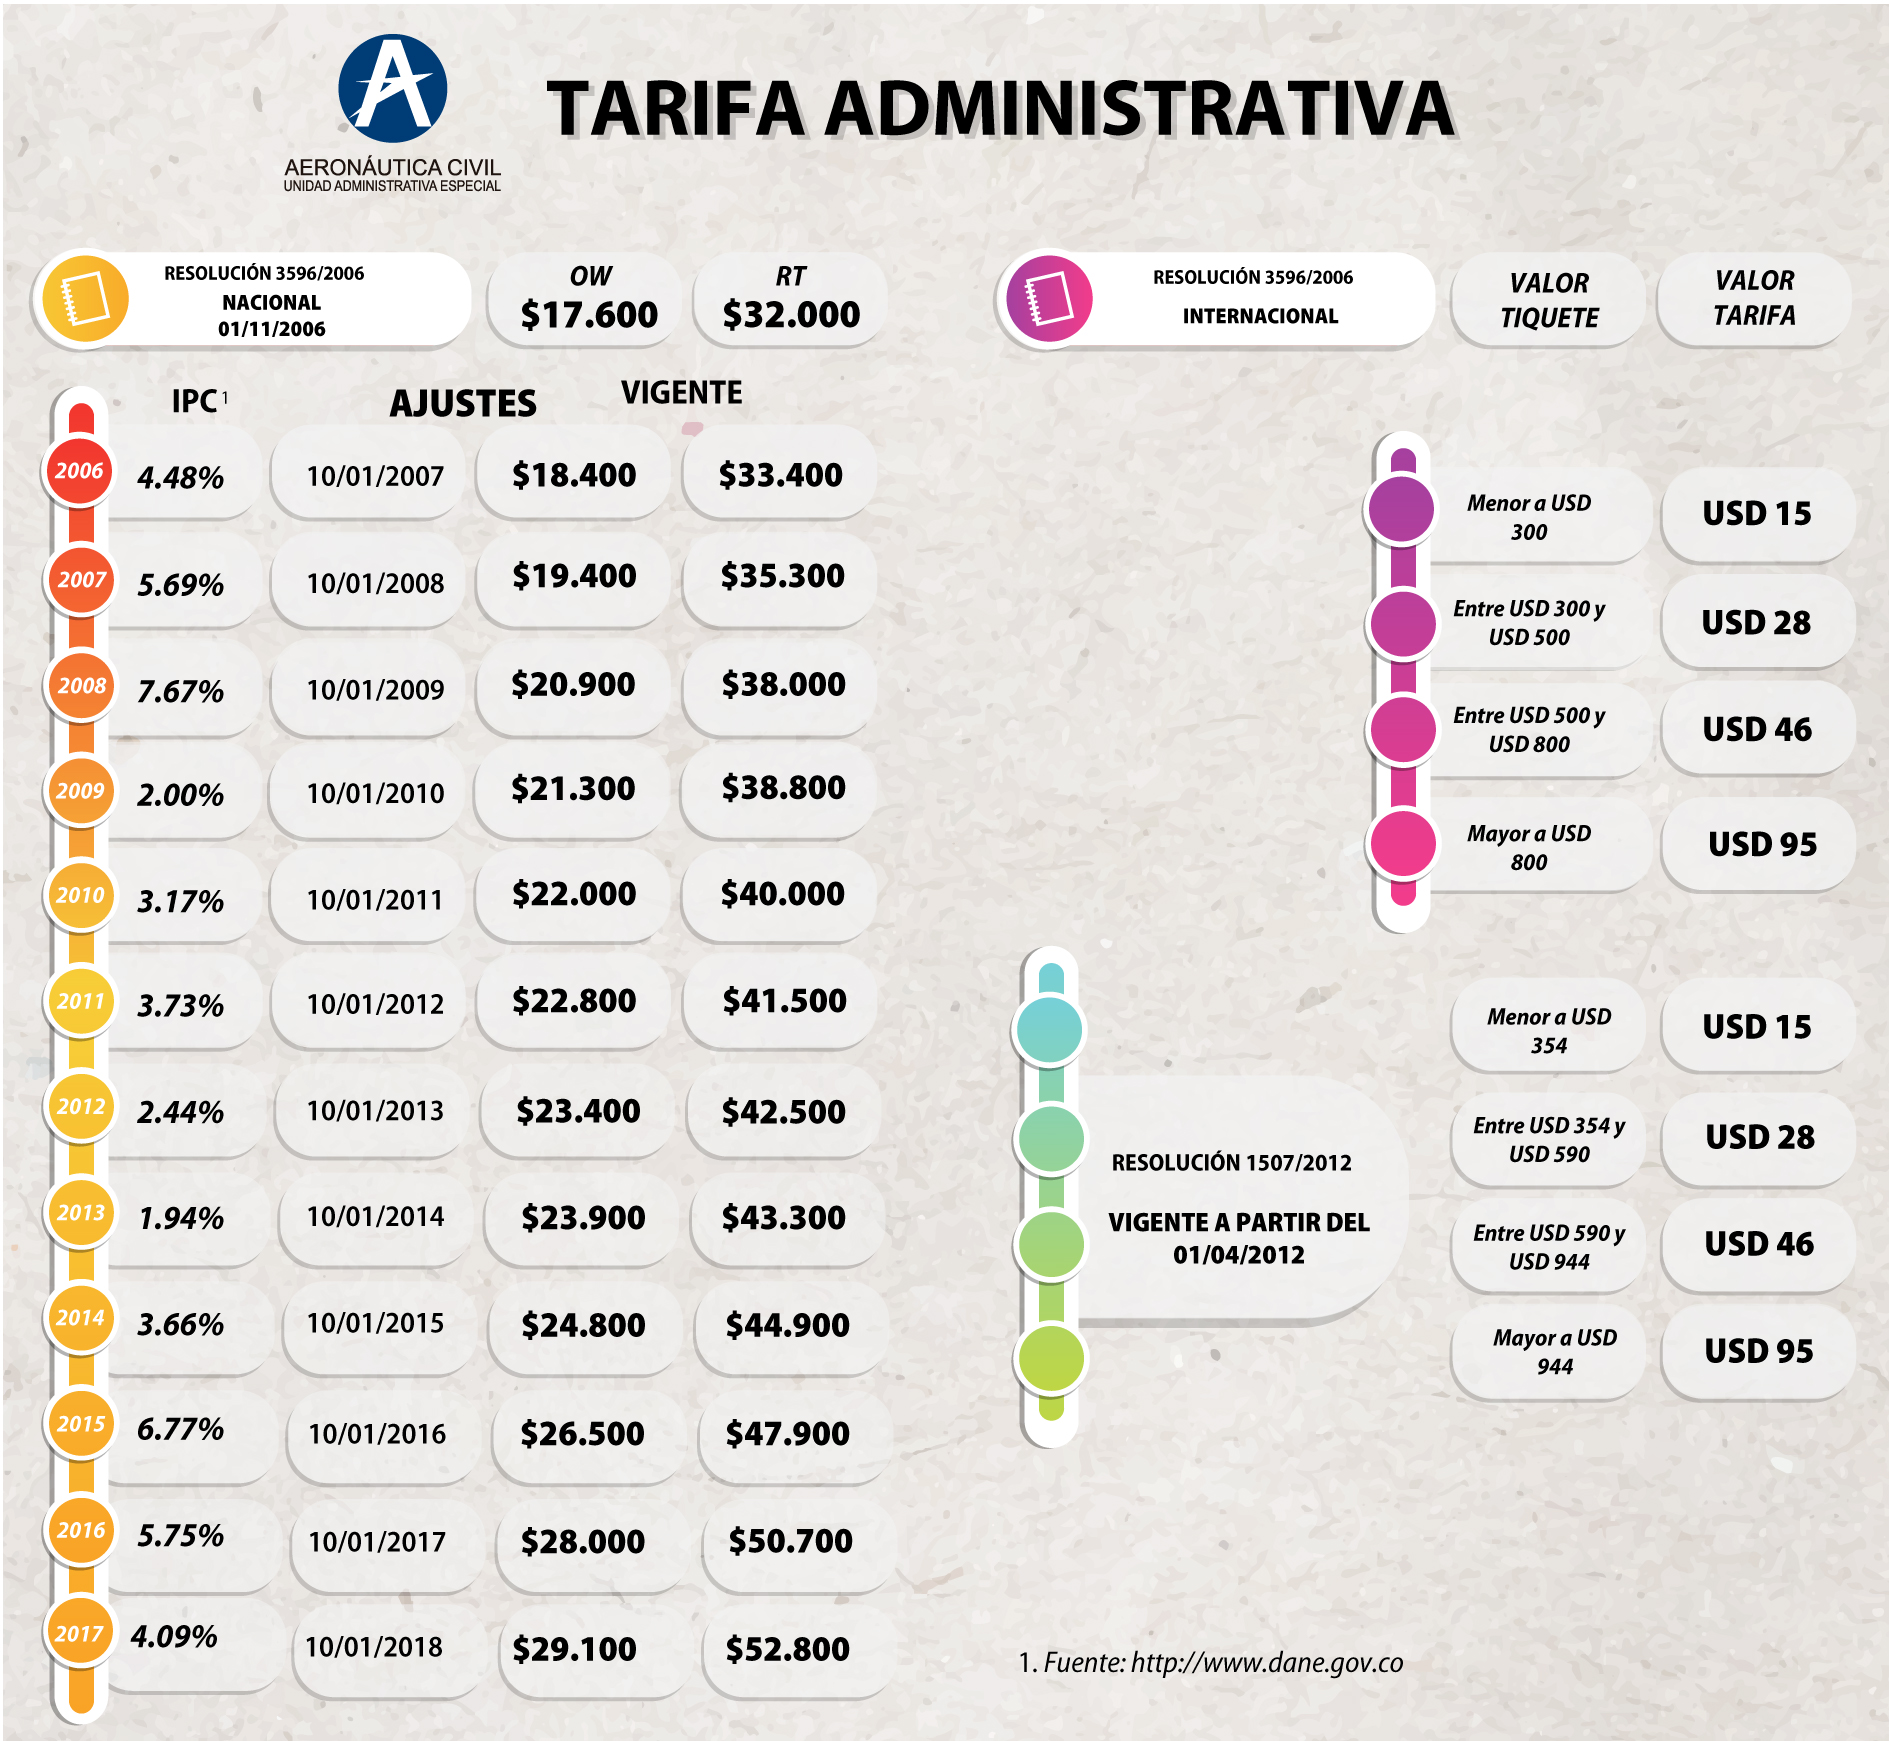 TarifaAdministrativa_Completa.jpg